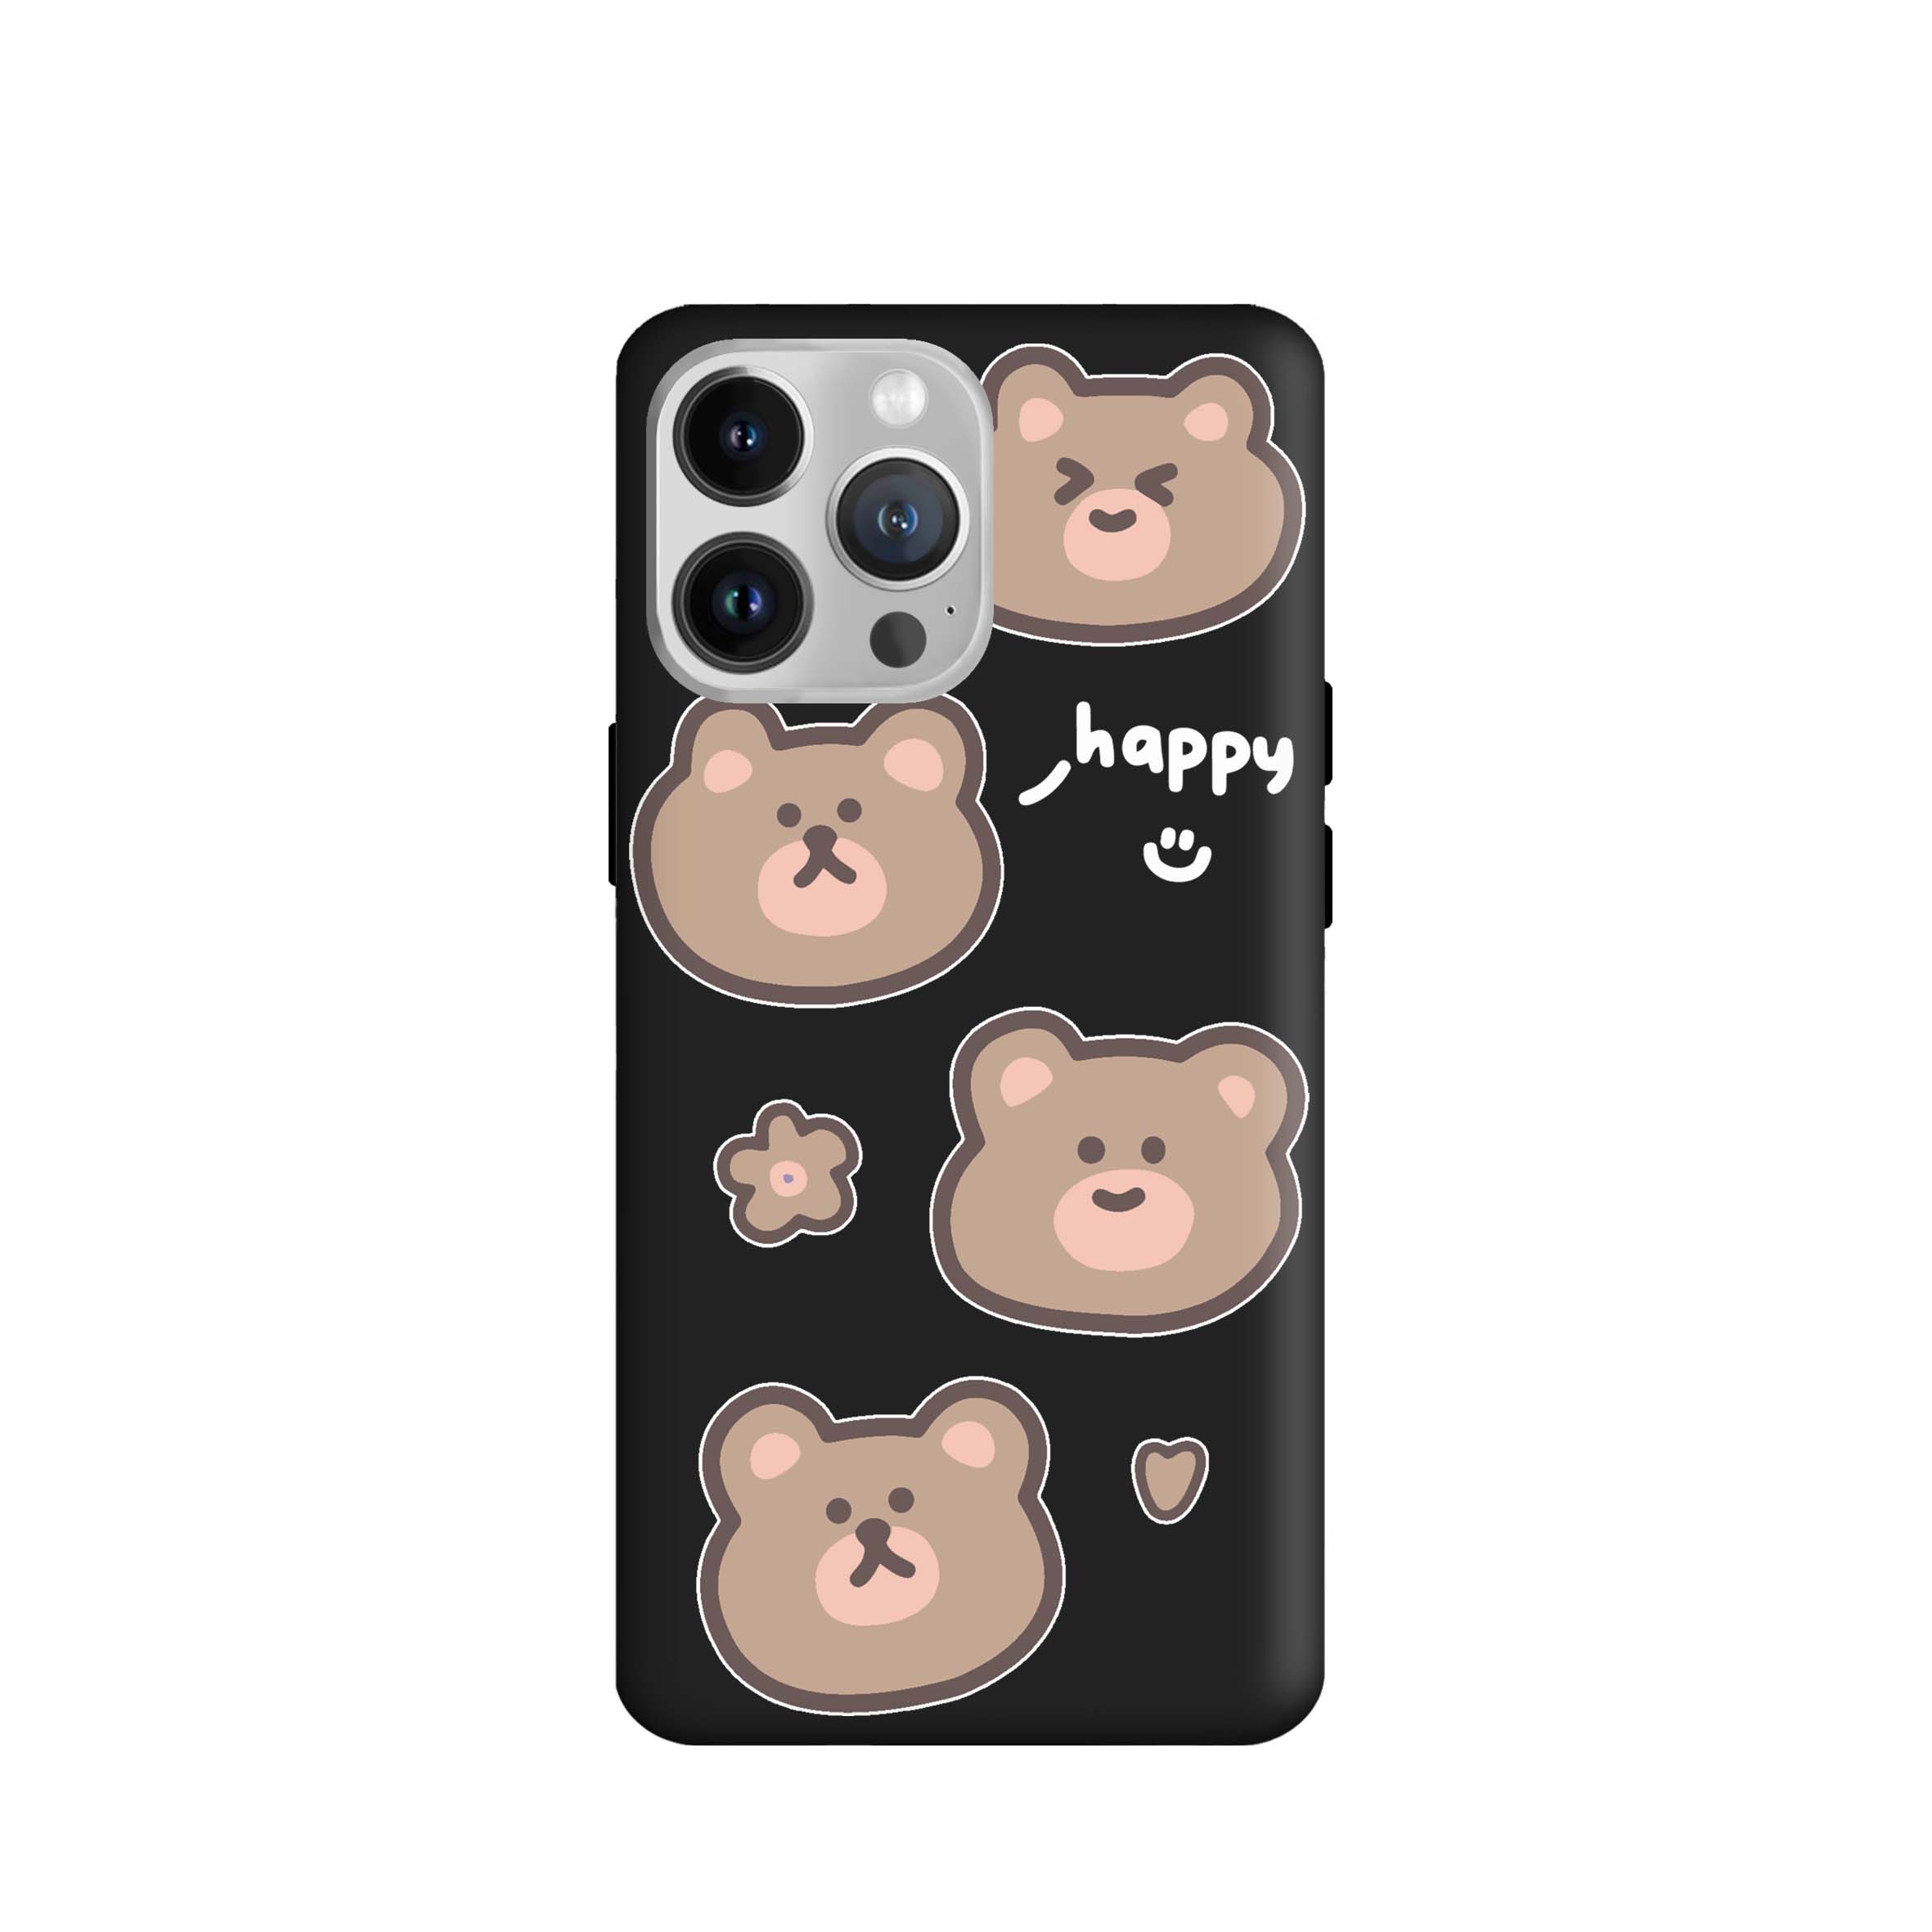 کاور طرح خرس های کیوت کد f3933 مناسب برای گوشی موبایل اپل iphone 13 Pro Max